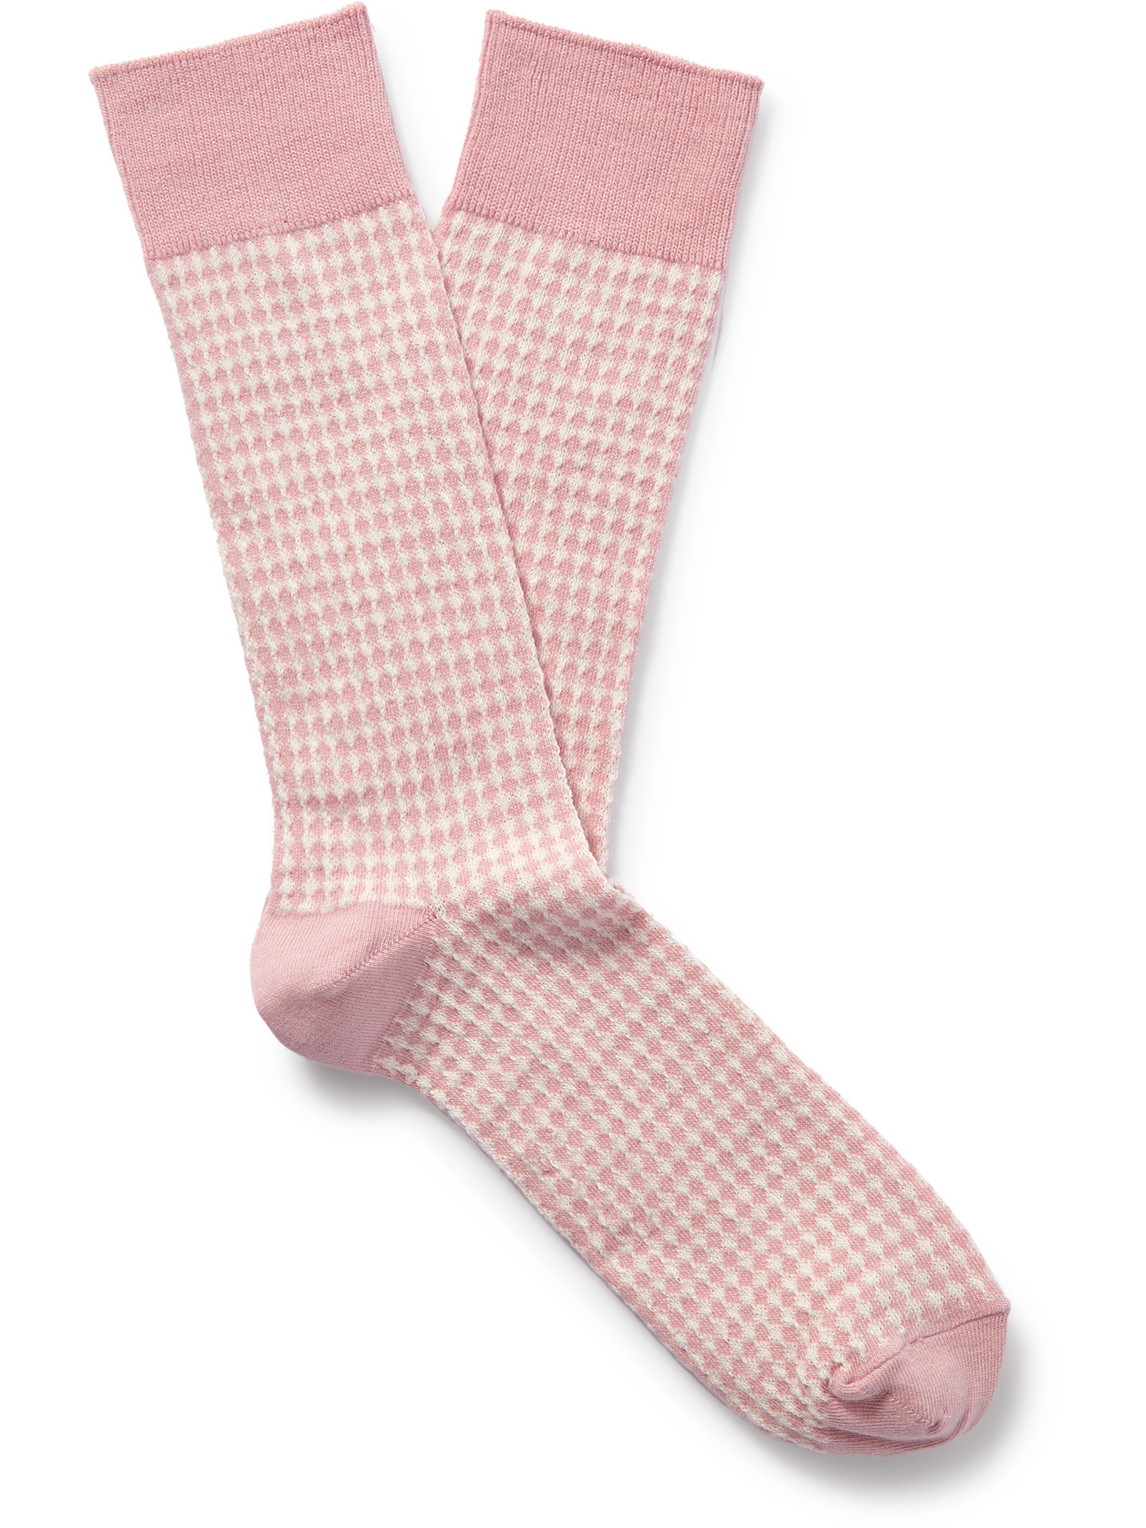 Jacquard-Knit Stretch Cotton-Blend Socks